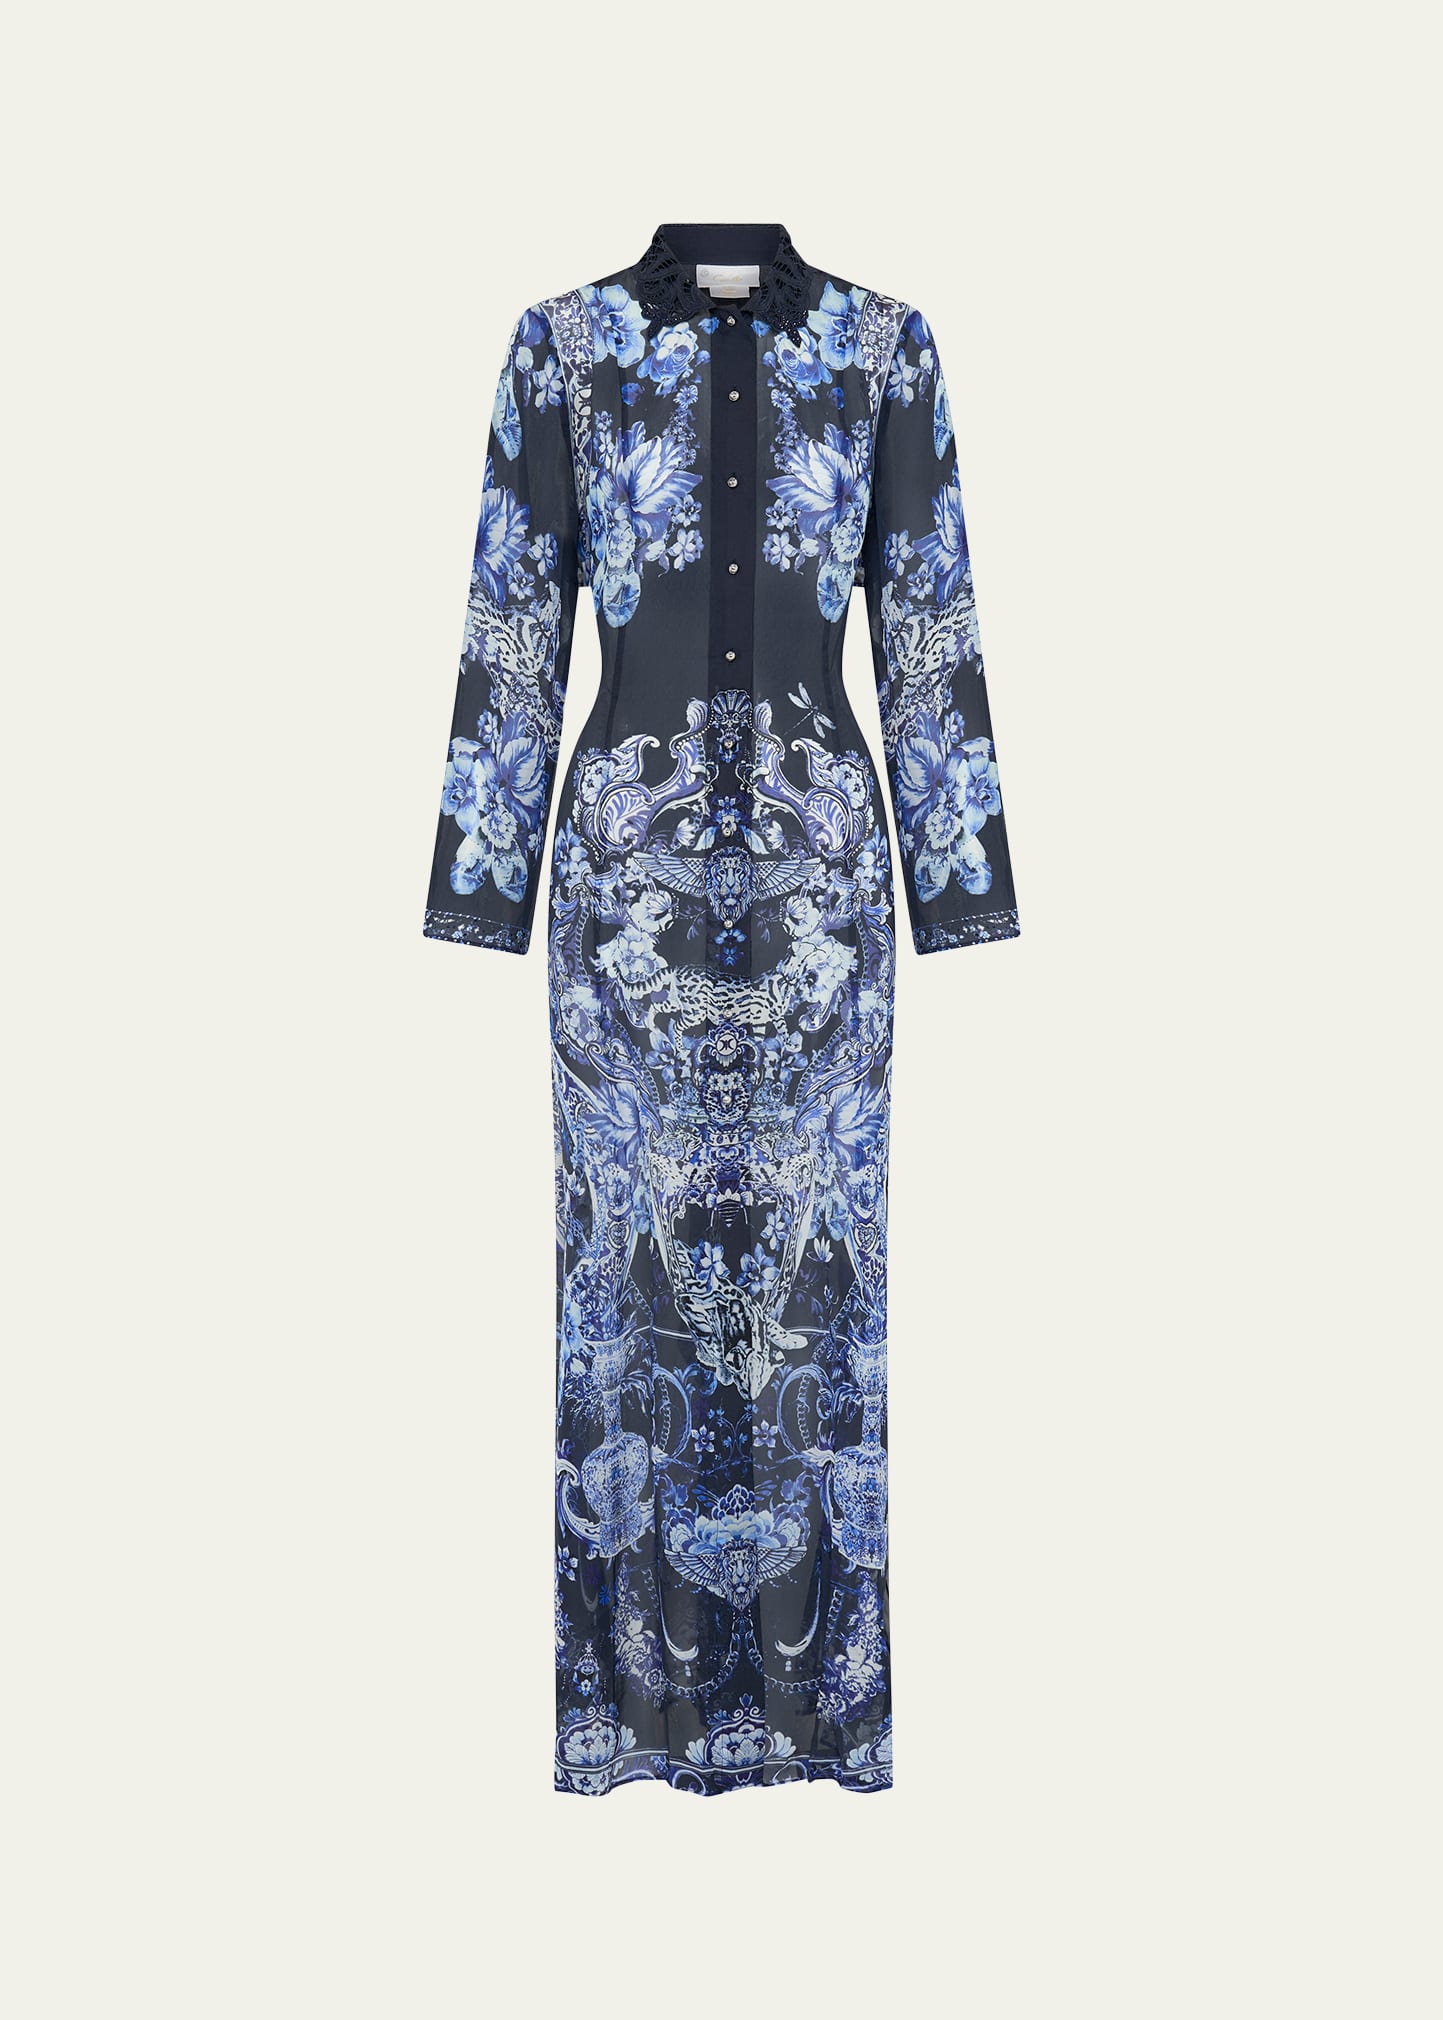 Delft Dynasty Chiffon Maxi Dress with Cutwork Lace Collar